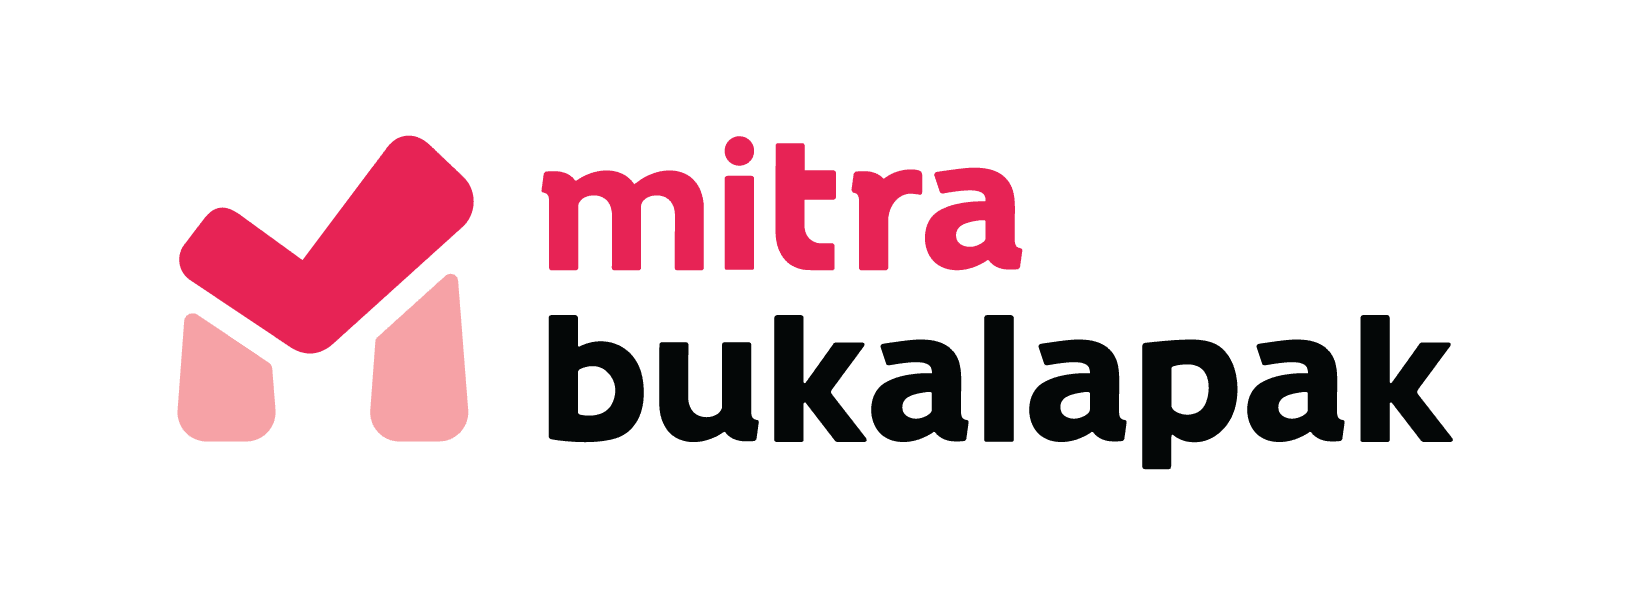 bukalapak Logo - About Us | Bukalapak